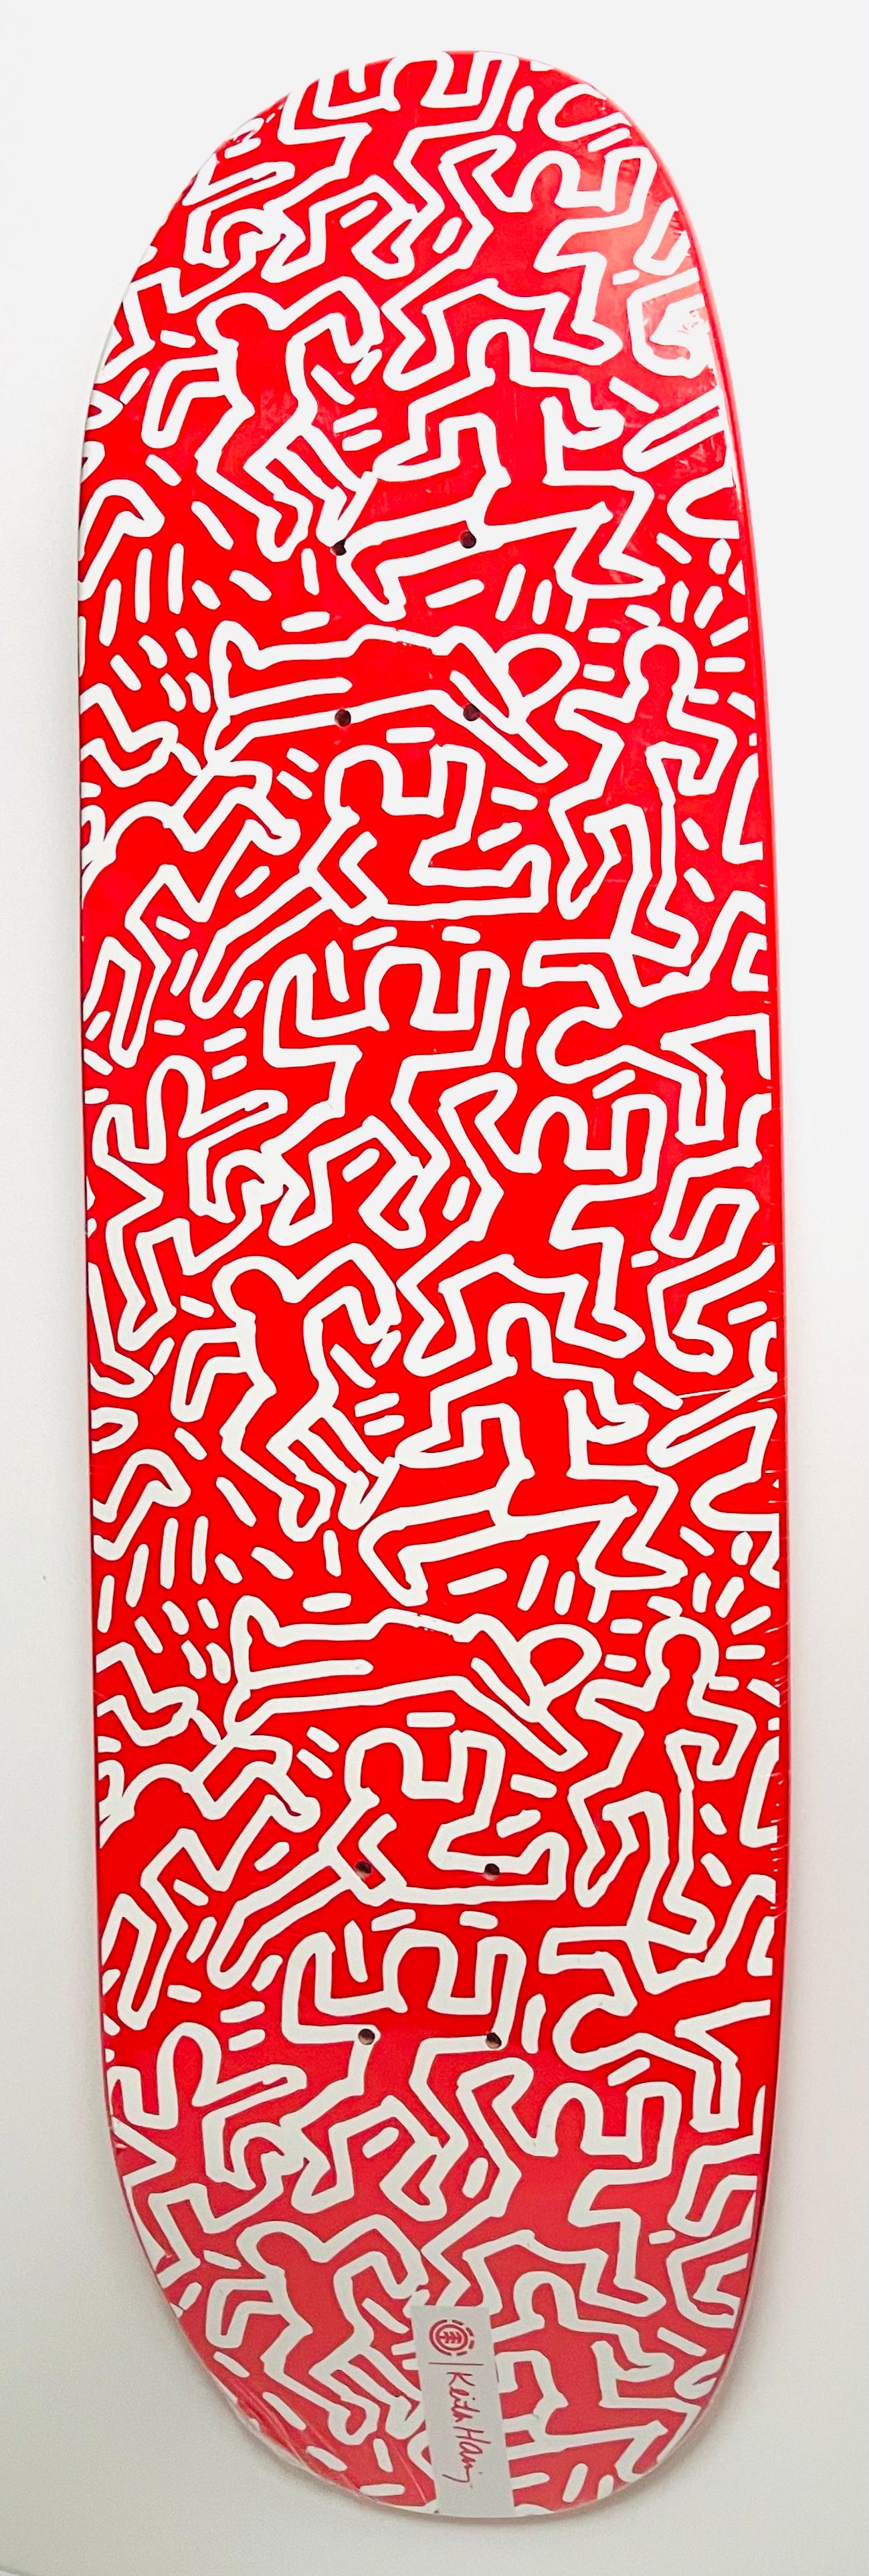 Skateboard-Deckendeck von Keith Haring (Keith Haring mit drei Augen) (Pop-Art), Print, von (after) Keith Haring